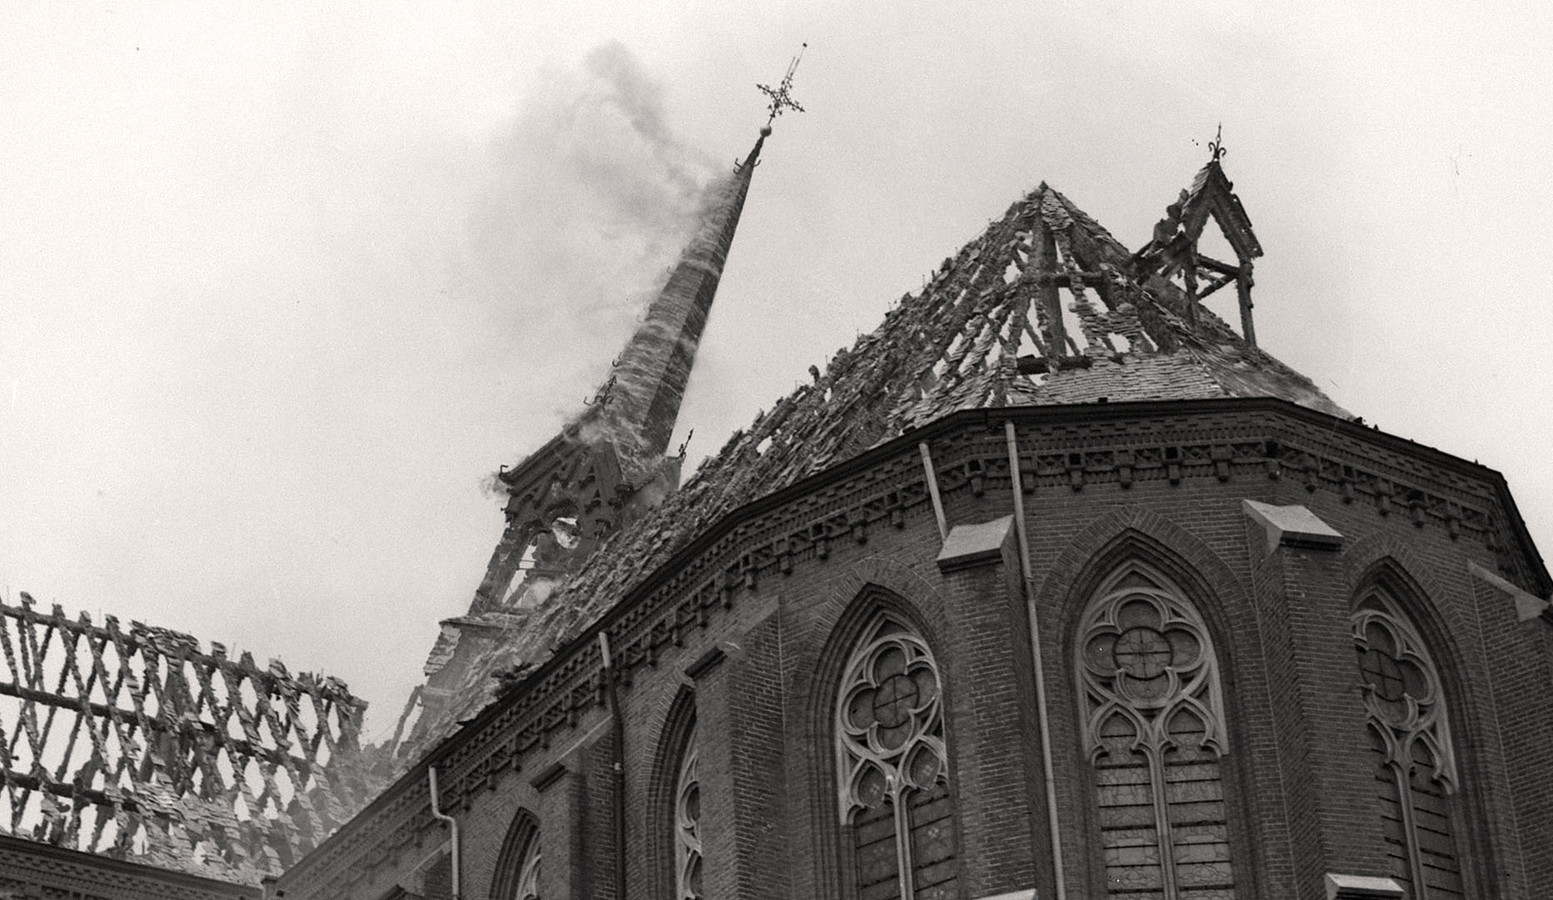 De schade aan de Sint-Trudokerk in Strijp, Eindhoven, door de brand die waarschijnlijk werd aangestoken, is groot in 1936.